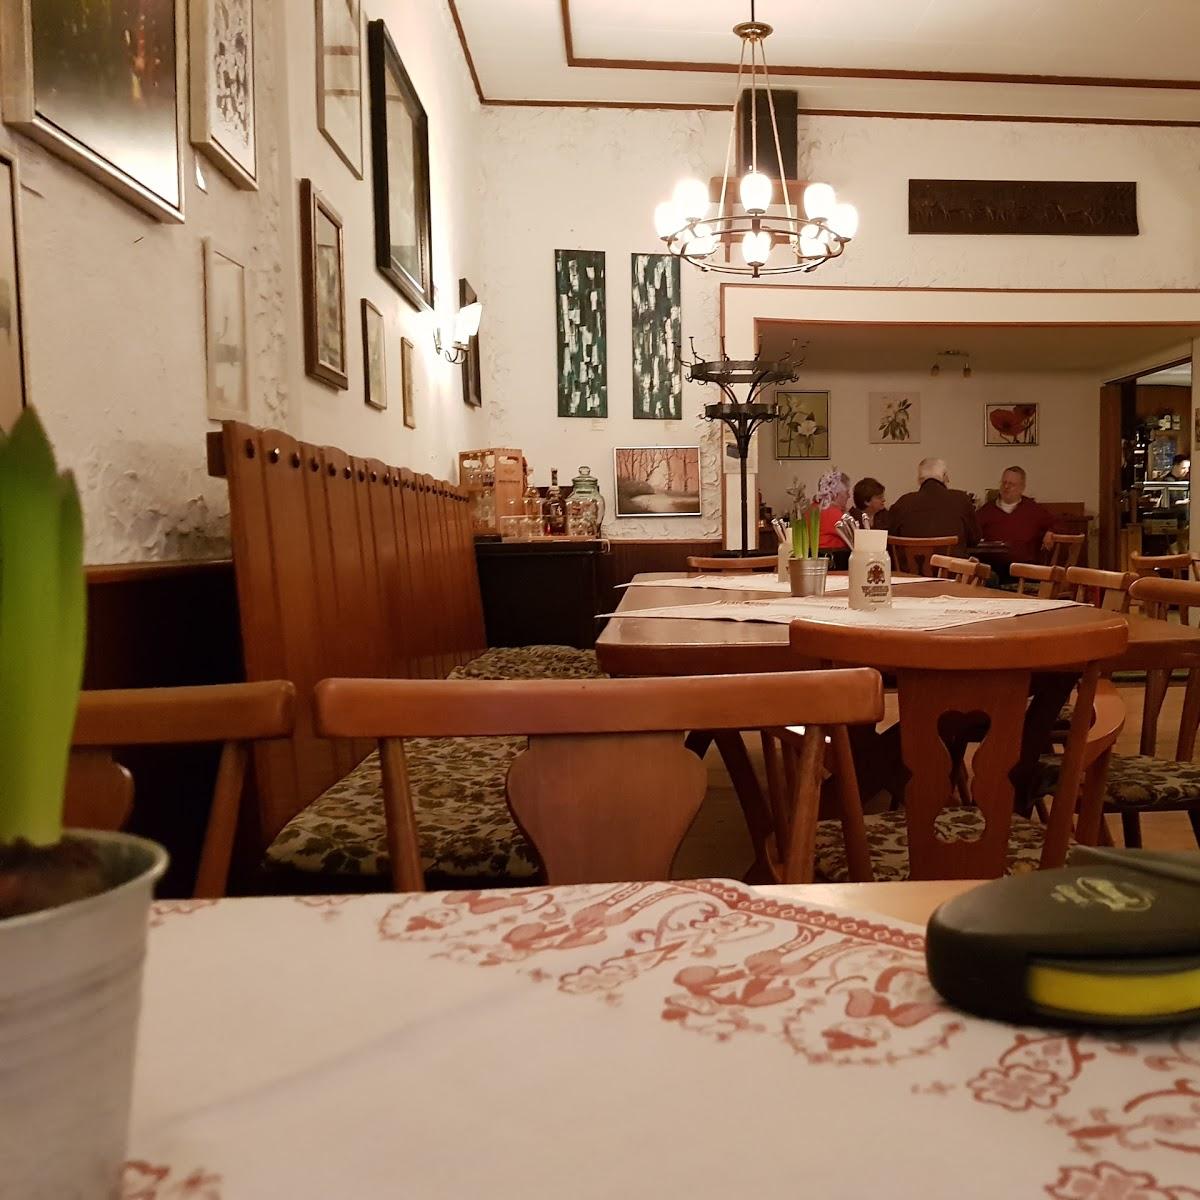 Restaurant "Historische Waldgaststätte Tetzelstein" in Königslutter am Elm